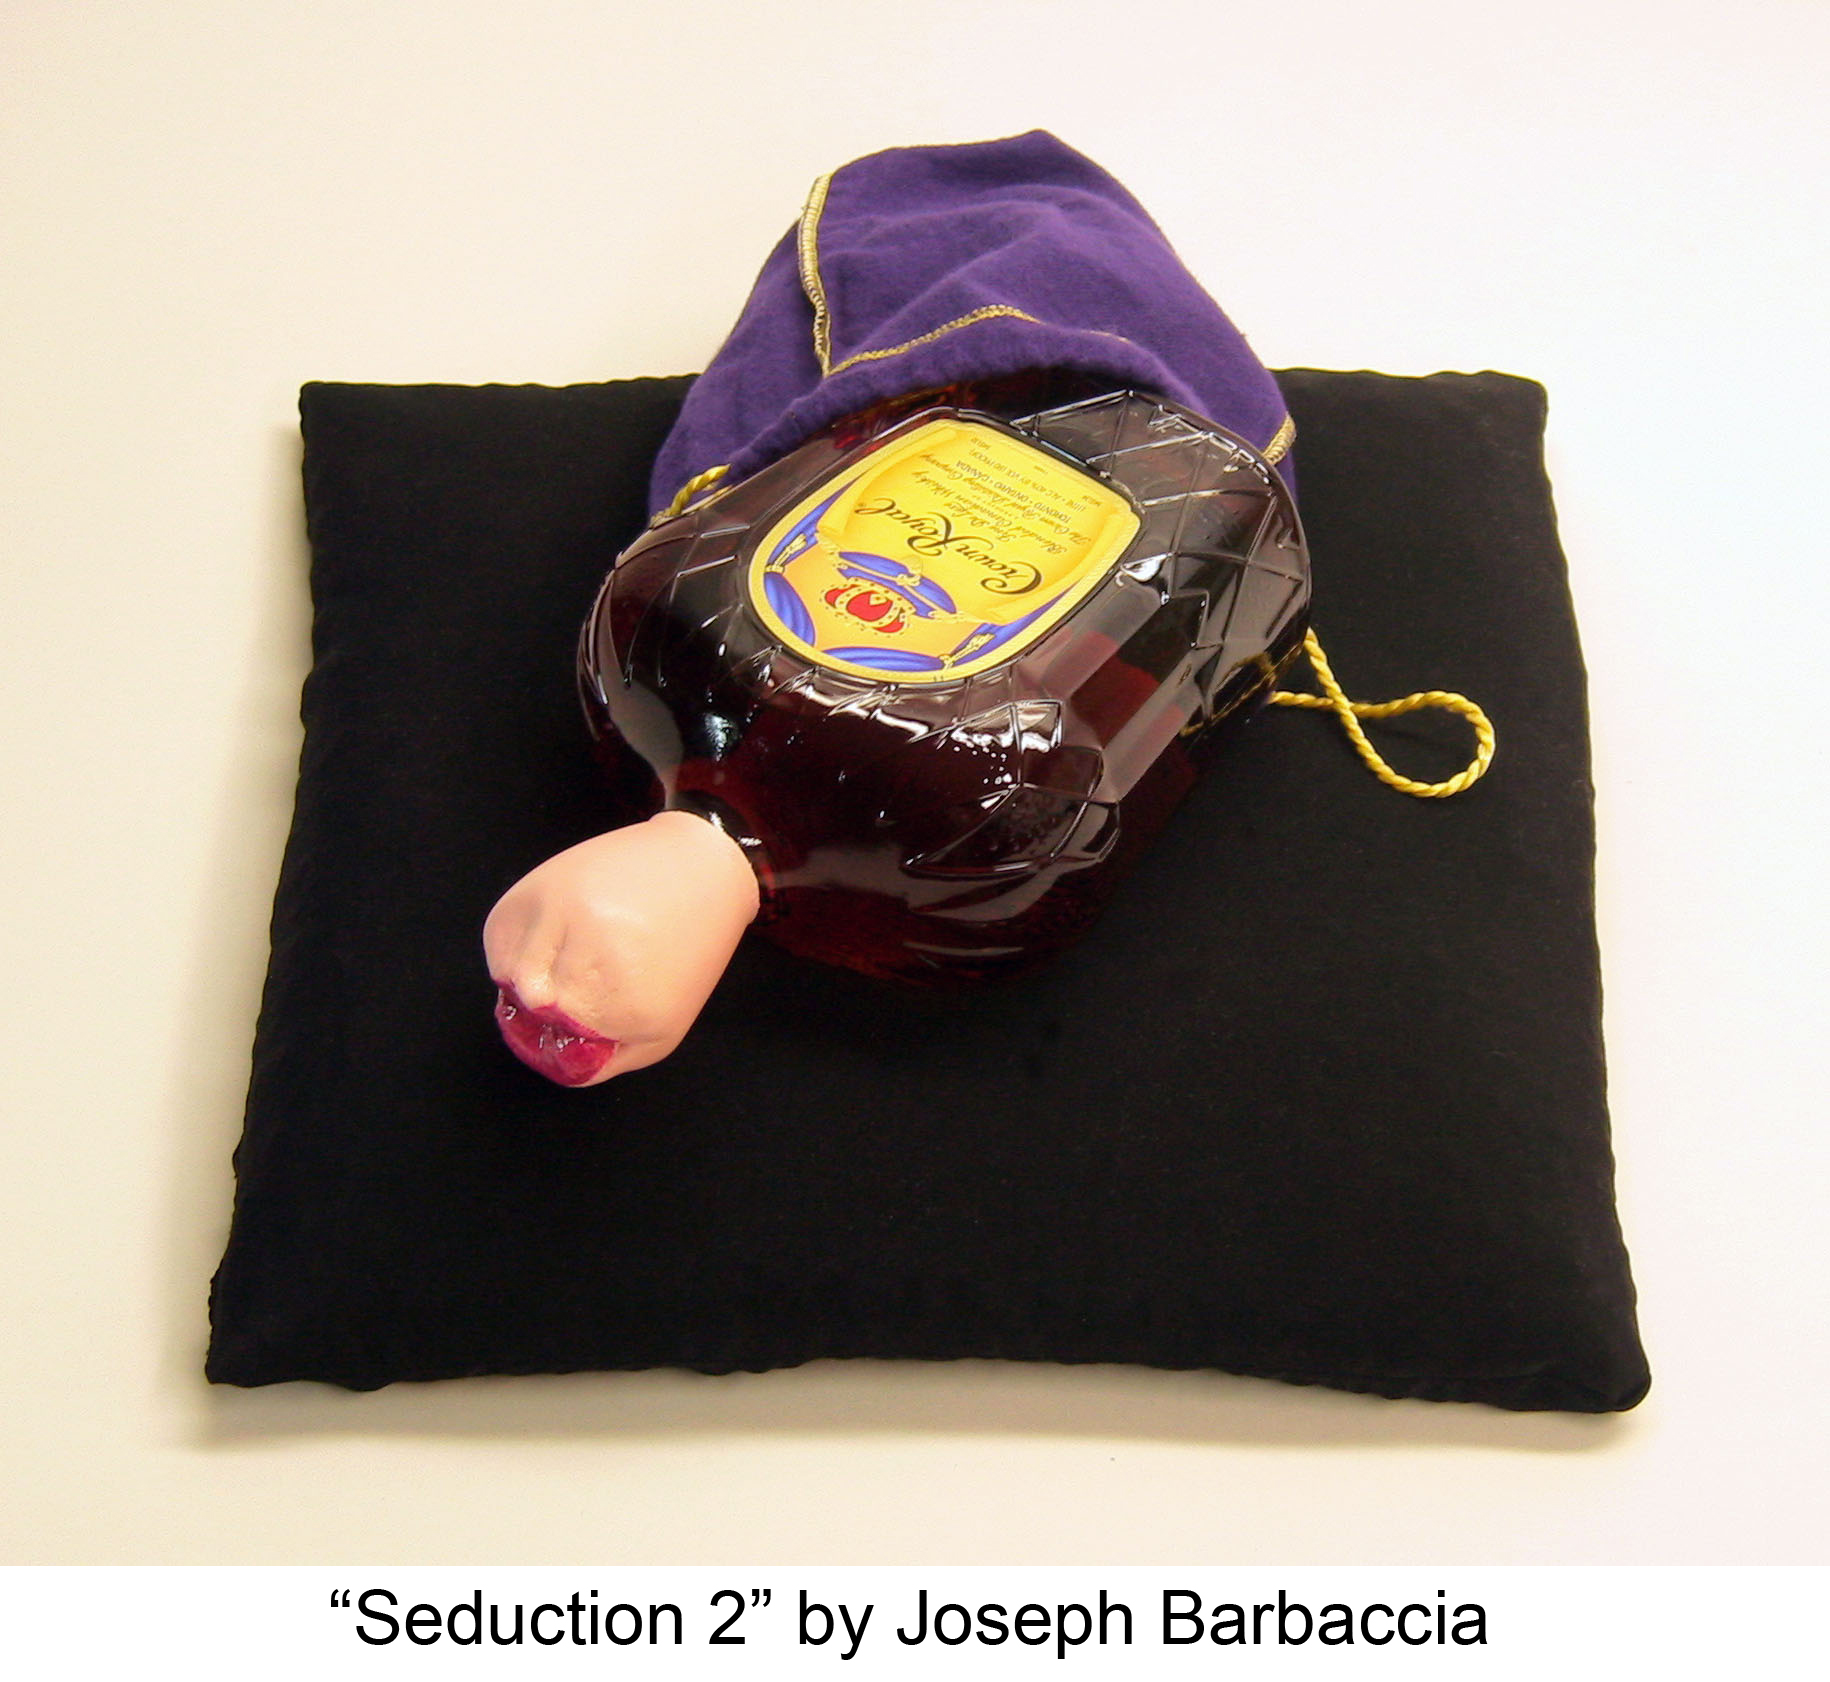 Seduction 2 by Joseph Barbaccia